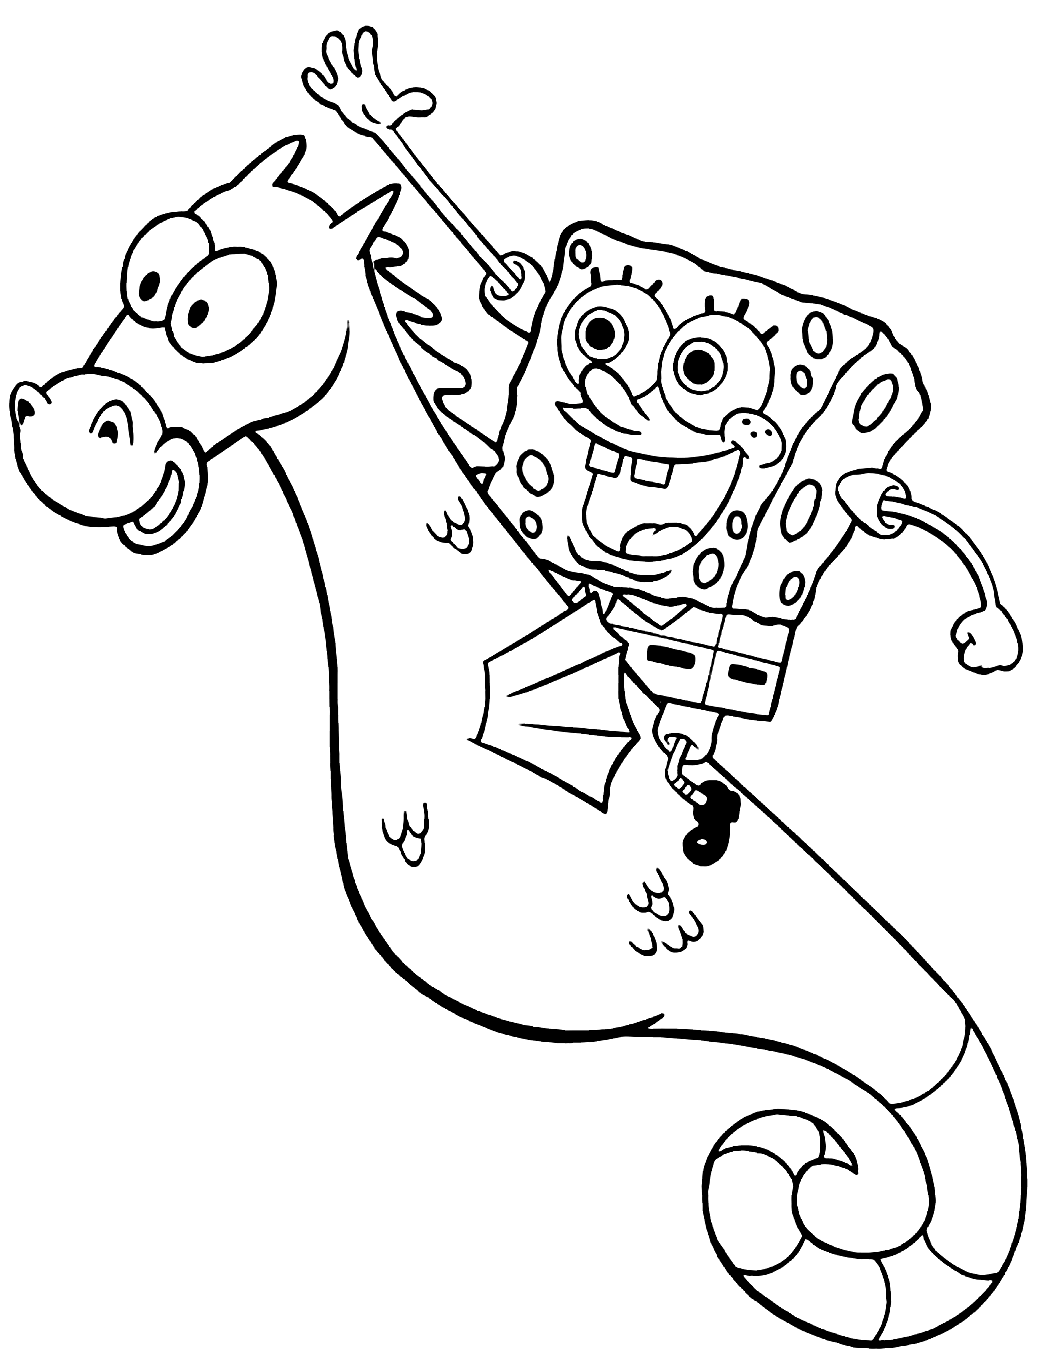 Губка Боб верхом на морском коньке из мультфильма "Губка Боб"